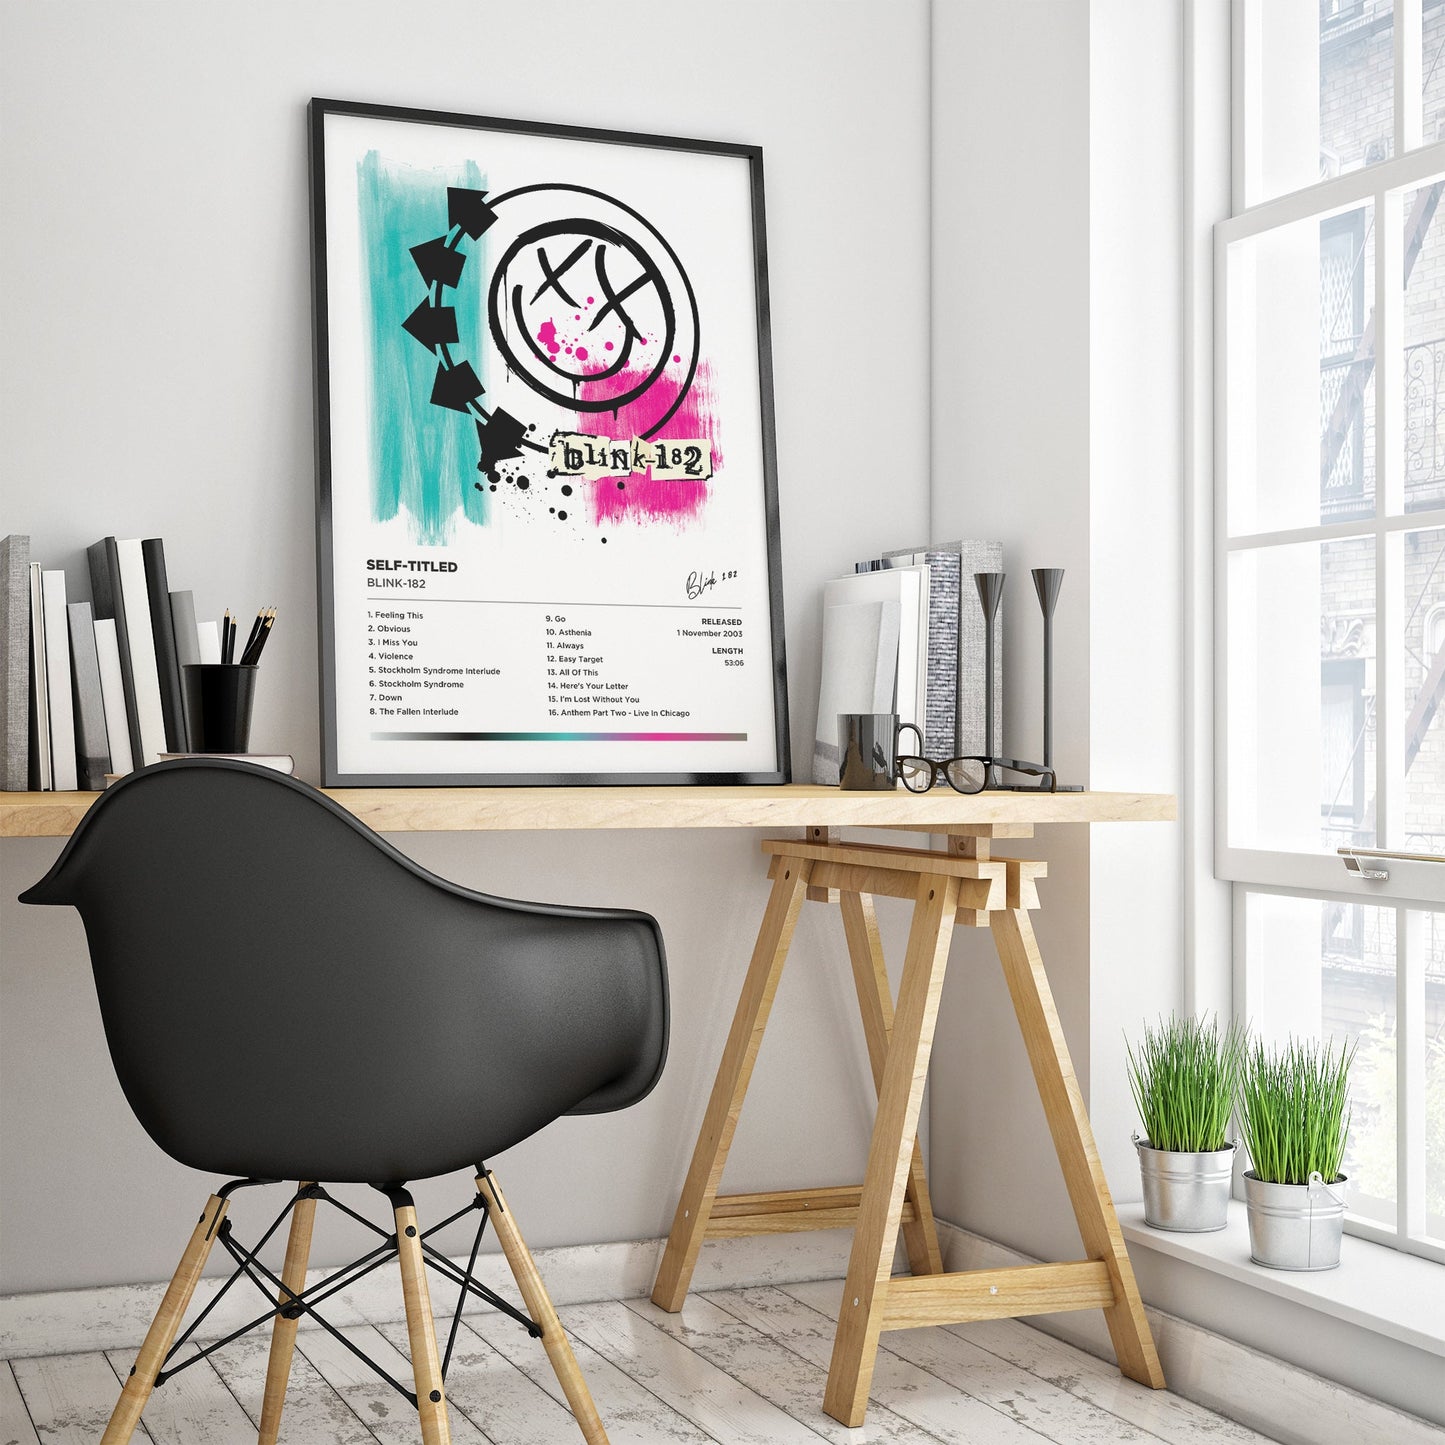 Blink-182 - Blink-182 Framed Poster Print | Polaroid Style | Album Cover Artwork